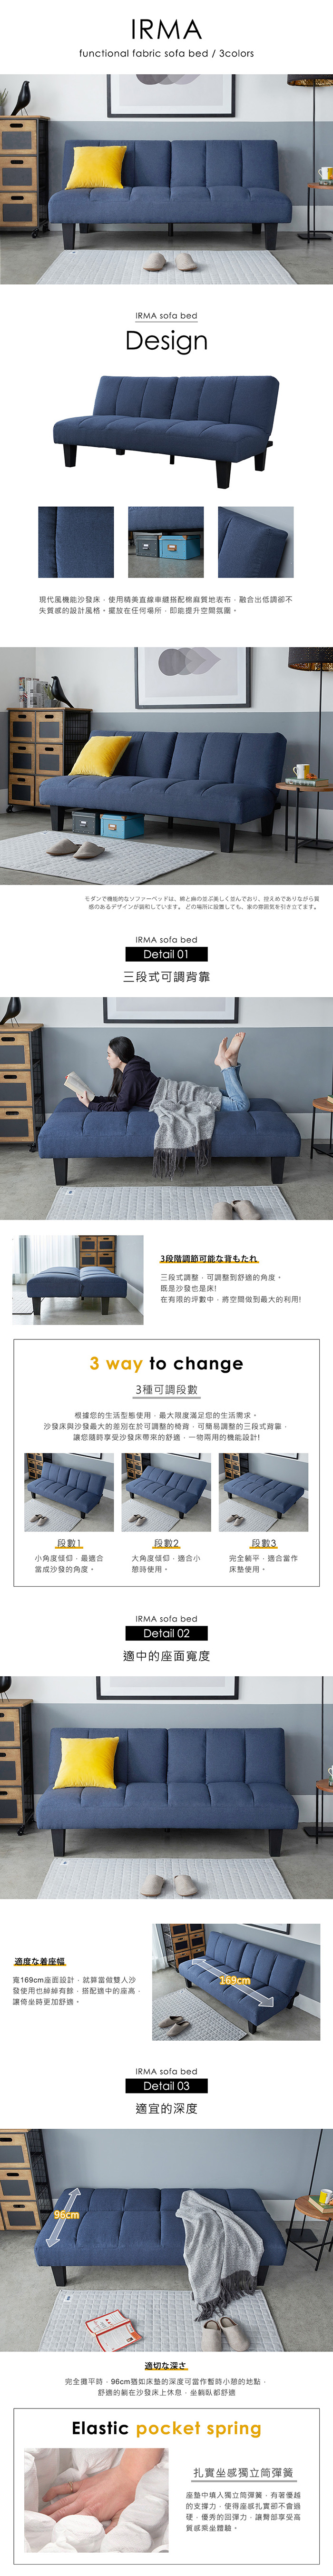 艾爾瑪現代風機能型布沙發床-3色/H&D東稻家居